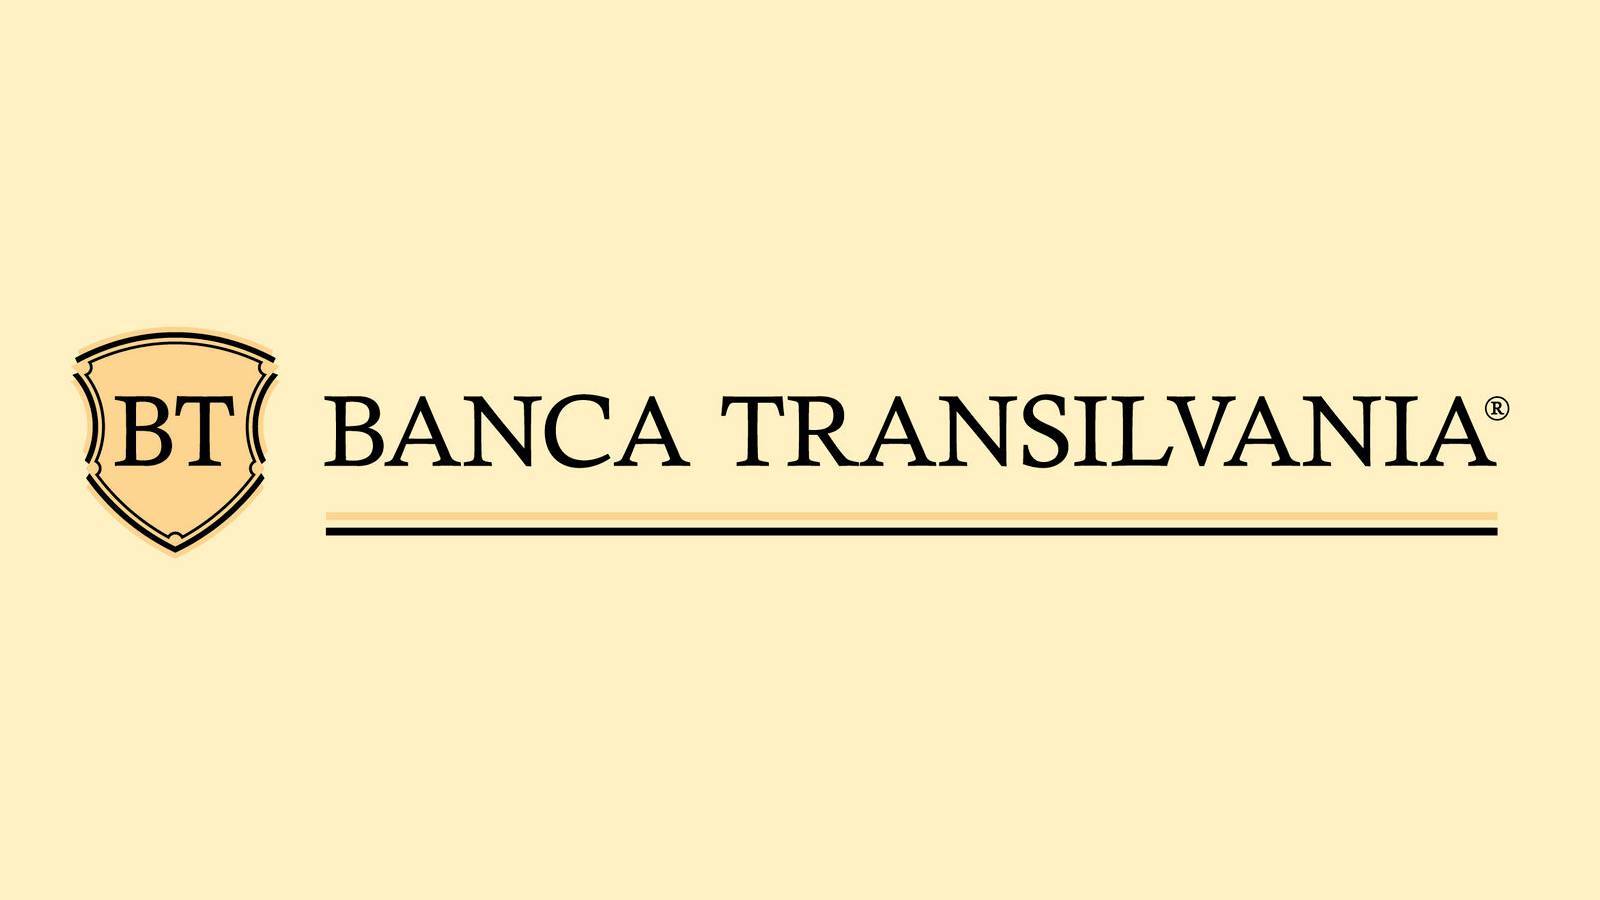 Aviso de BANCA Transilvania ADVERTENCIA enviado a todos los clientes